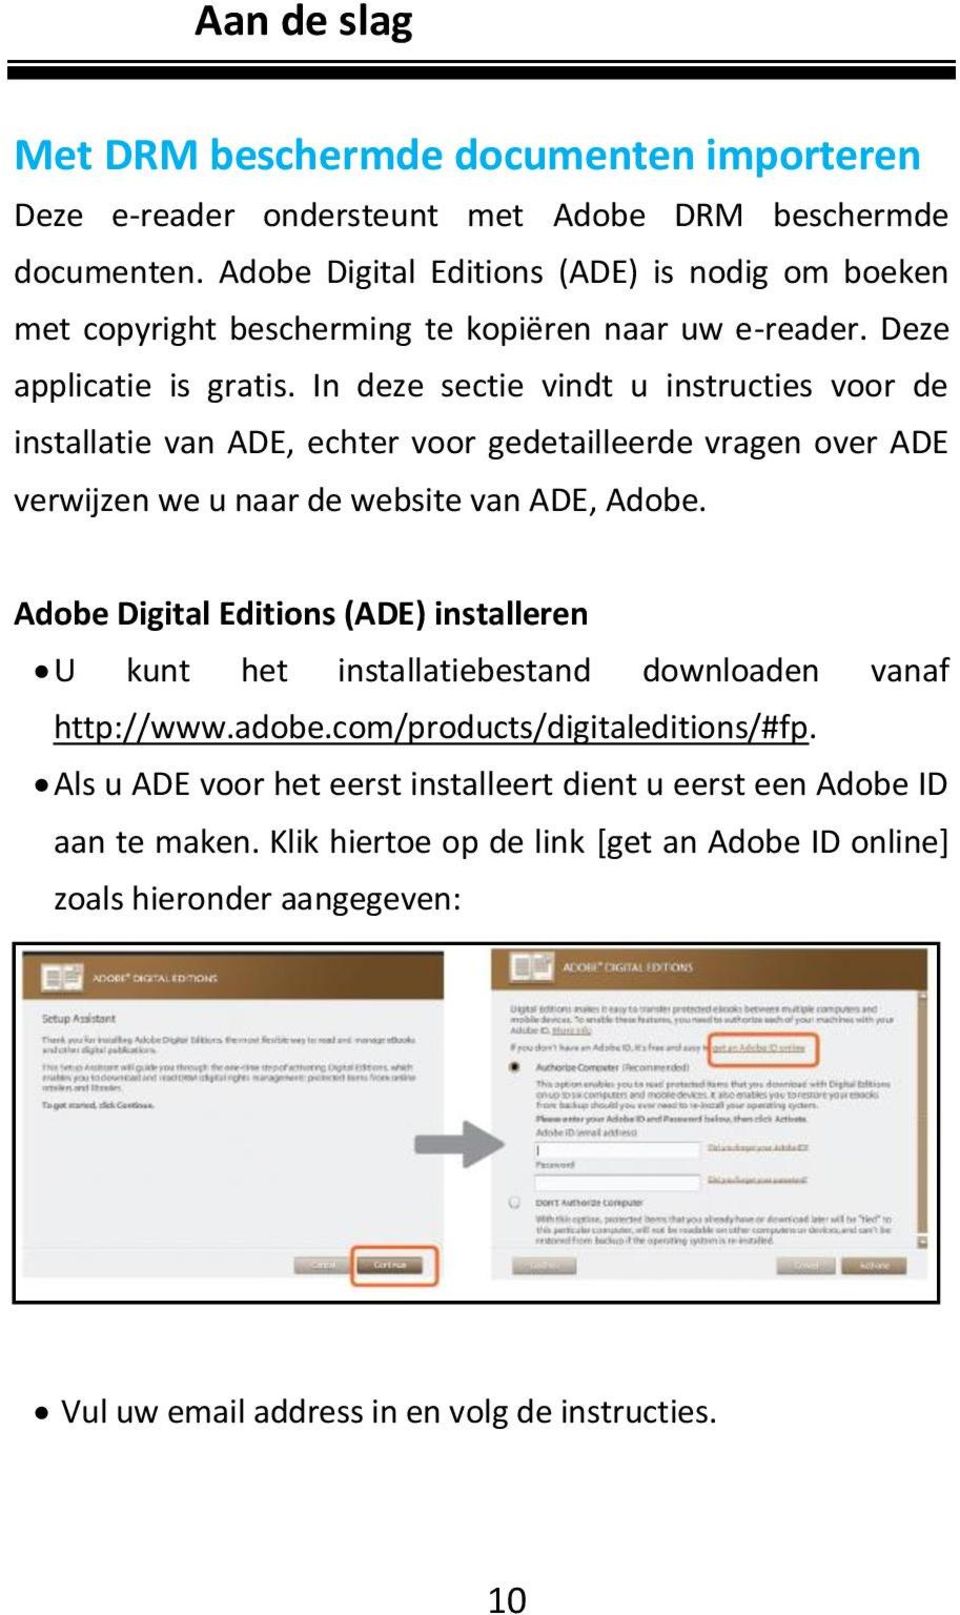 In deze sectie vindt u instructies voor de installatie van ADE, echter voor gedetailleerde vragen over ADE verwijzen we u naar de website van ADE, Adobe.